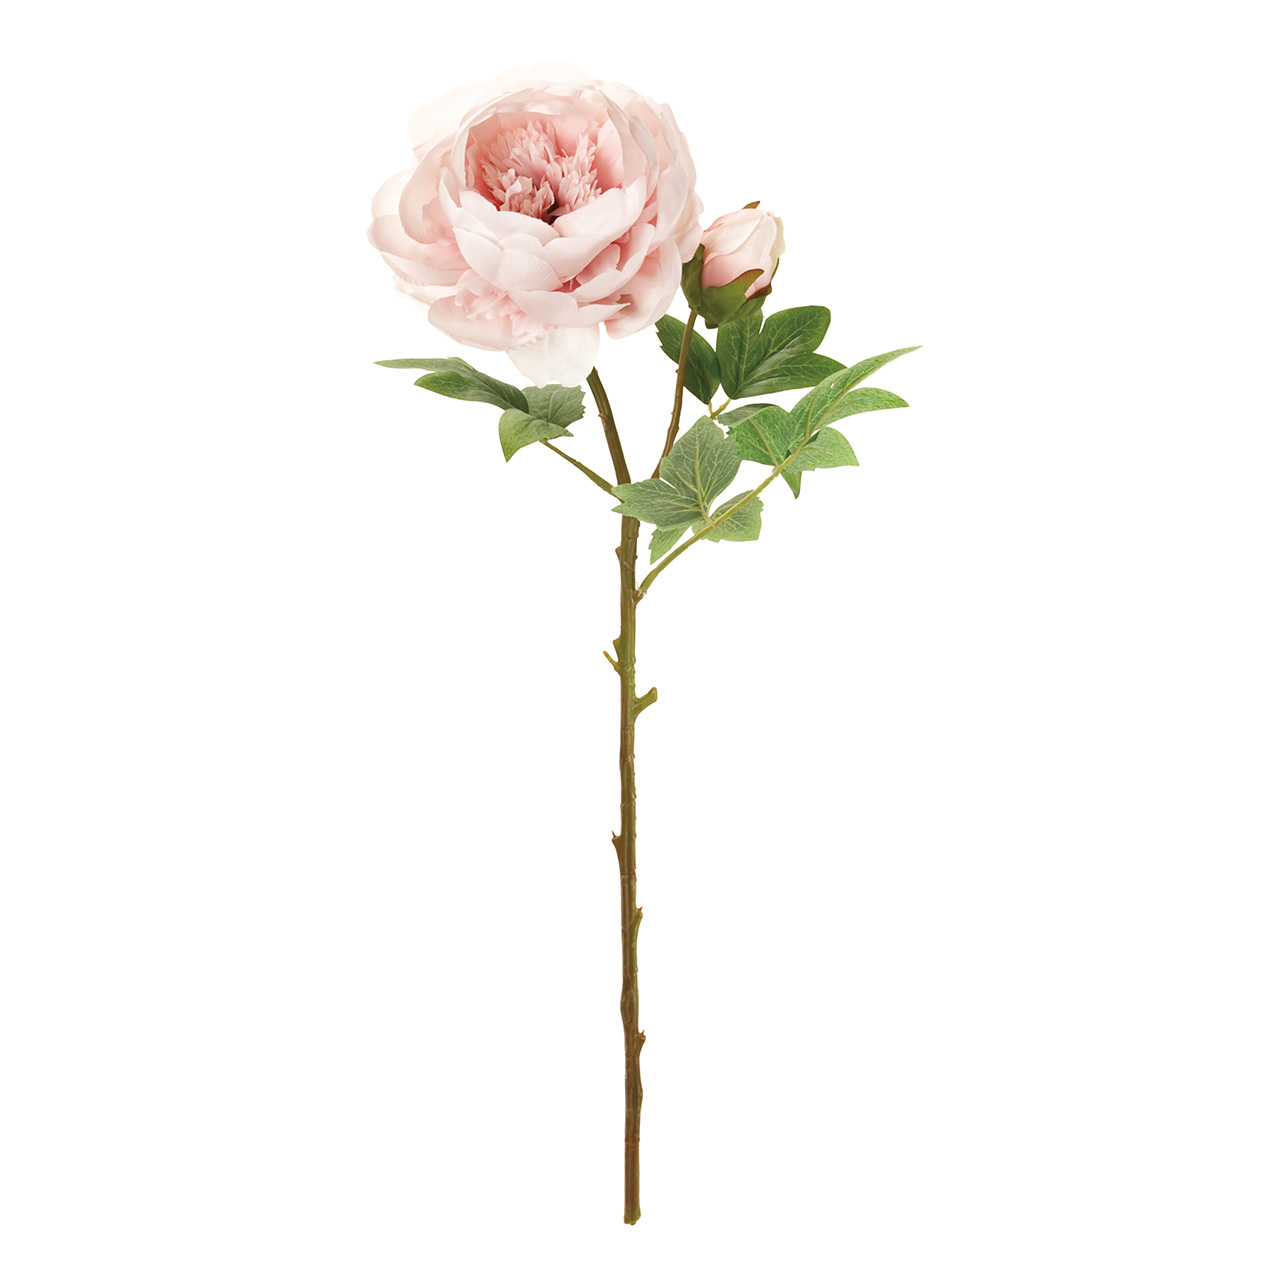 マイフラ 通販 Magiq エレガンピオニー ピンク アーティフィシャルフラワー 造花 Fm 002 ピオニー ピンク Magiq アーティフィシャルフラワー 造花 全国にmagiq 花器 花資材などをお届けします